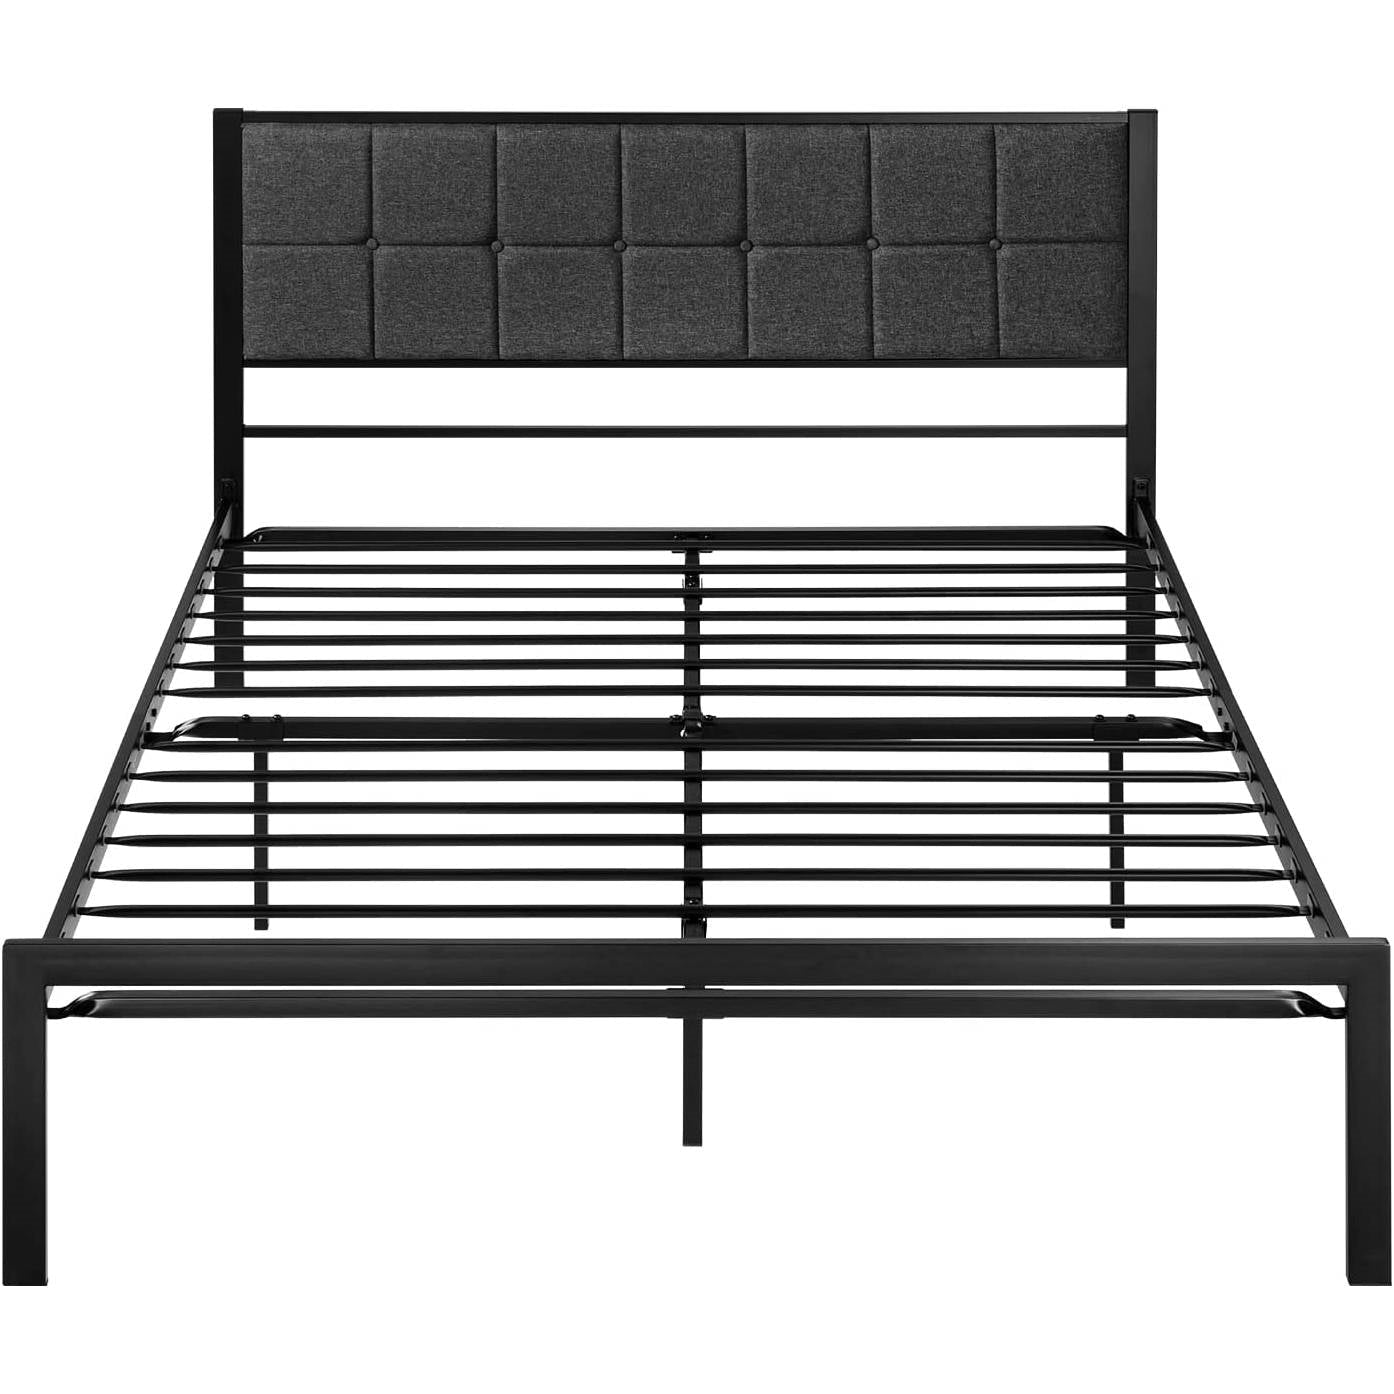 Bedroom > Bed Frames > Platform Beds - Full Metal Platform Bed Frame With Gray Button Tufted Upholstered Headboard